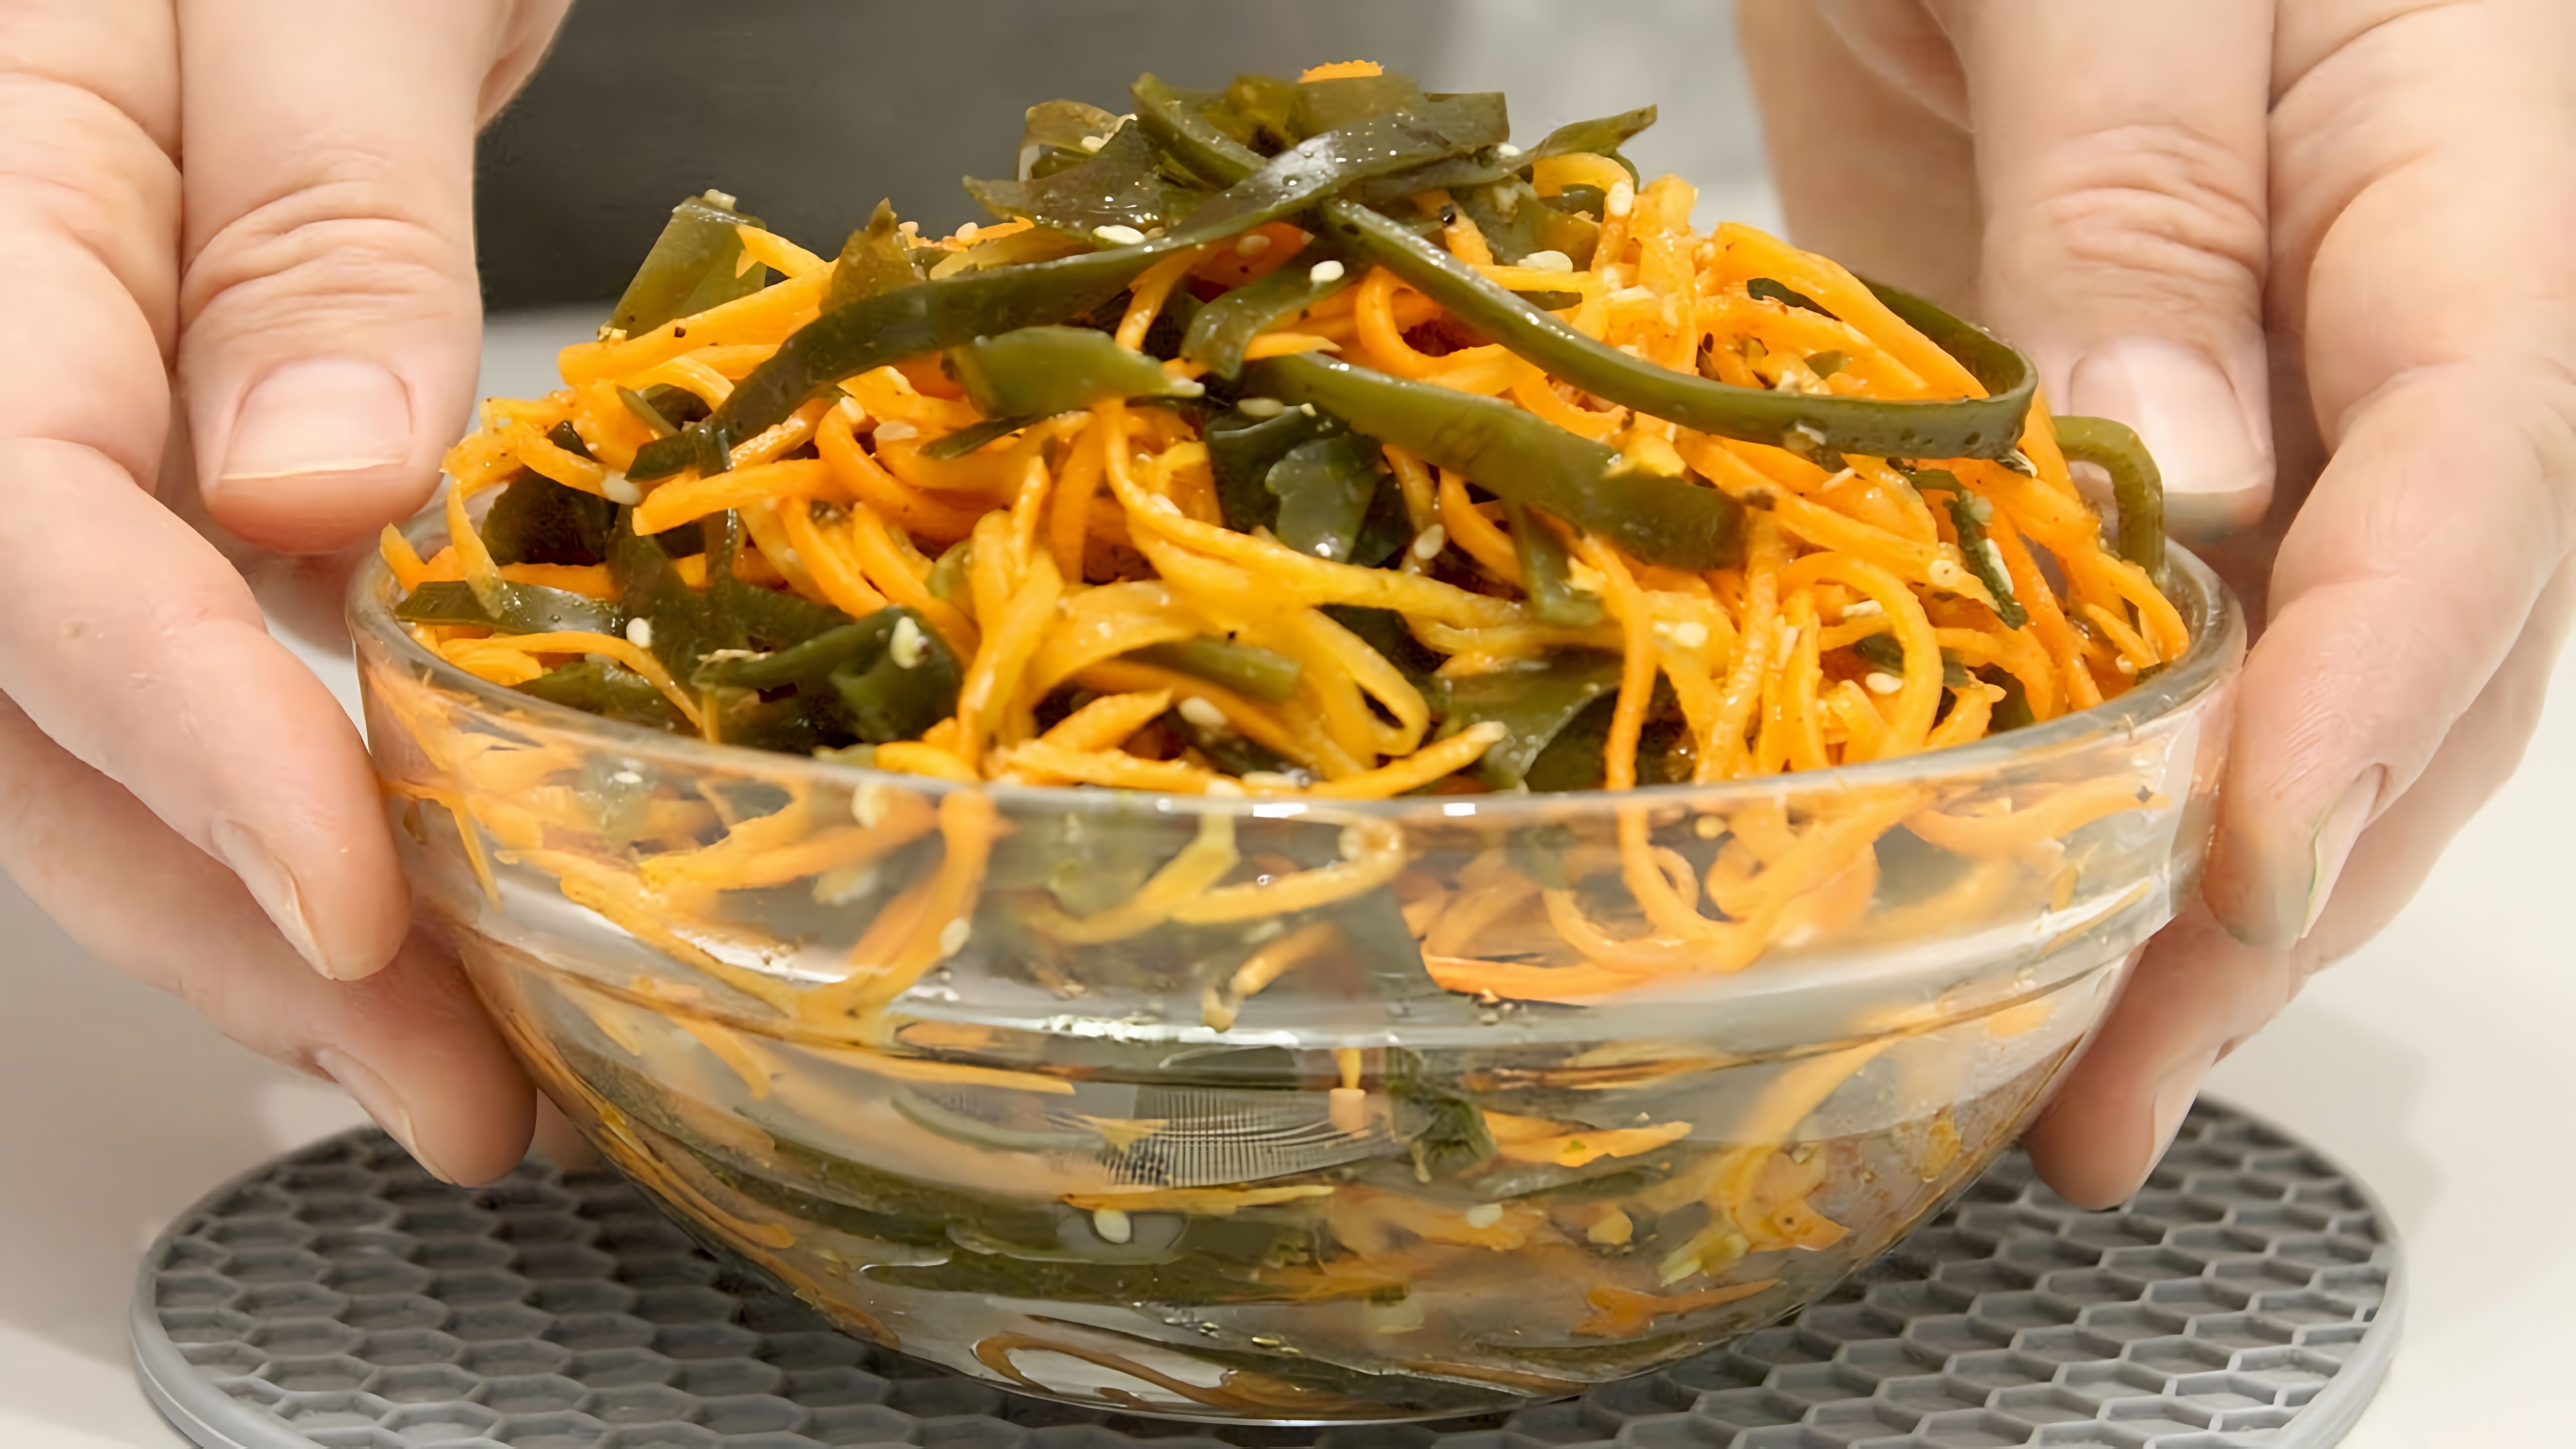 В этом видео демонстрируется рецепт приготовления салата по-корейски из морской капусты и моркови